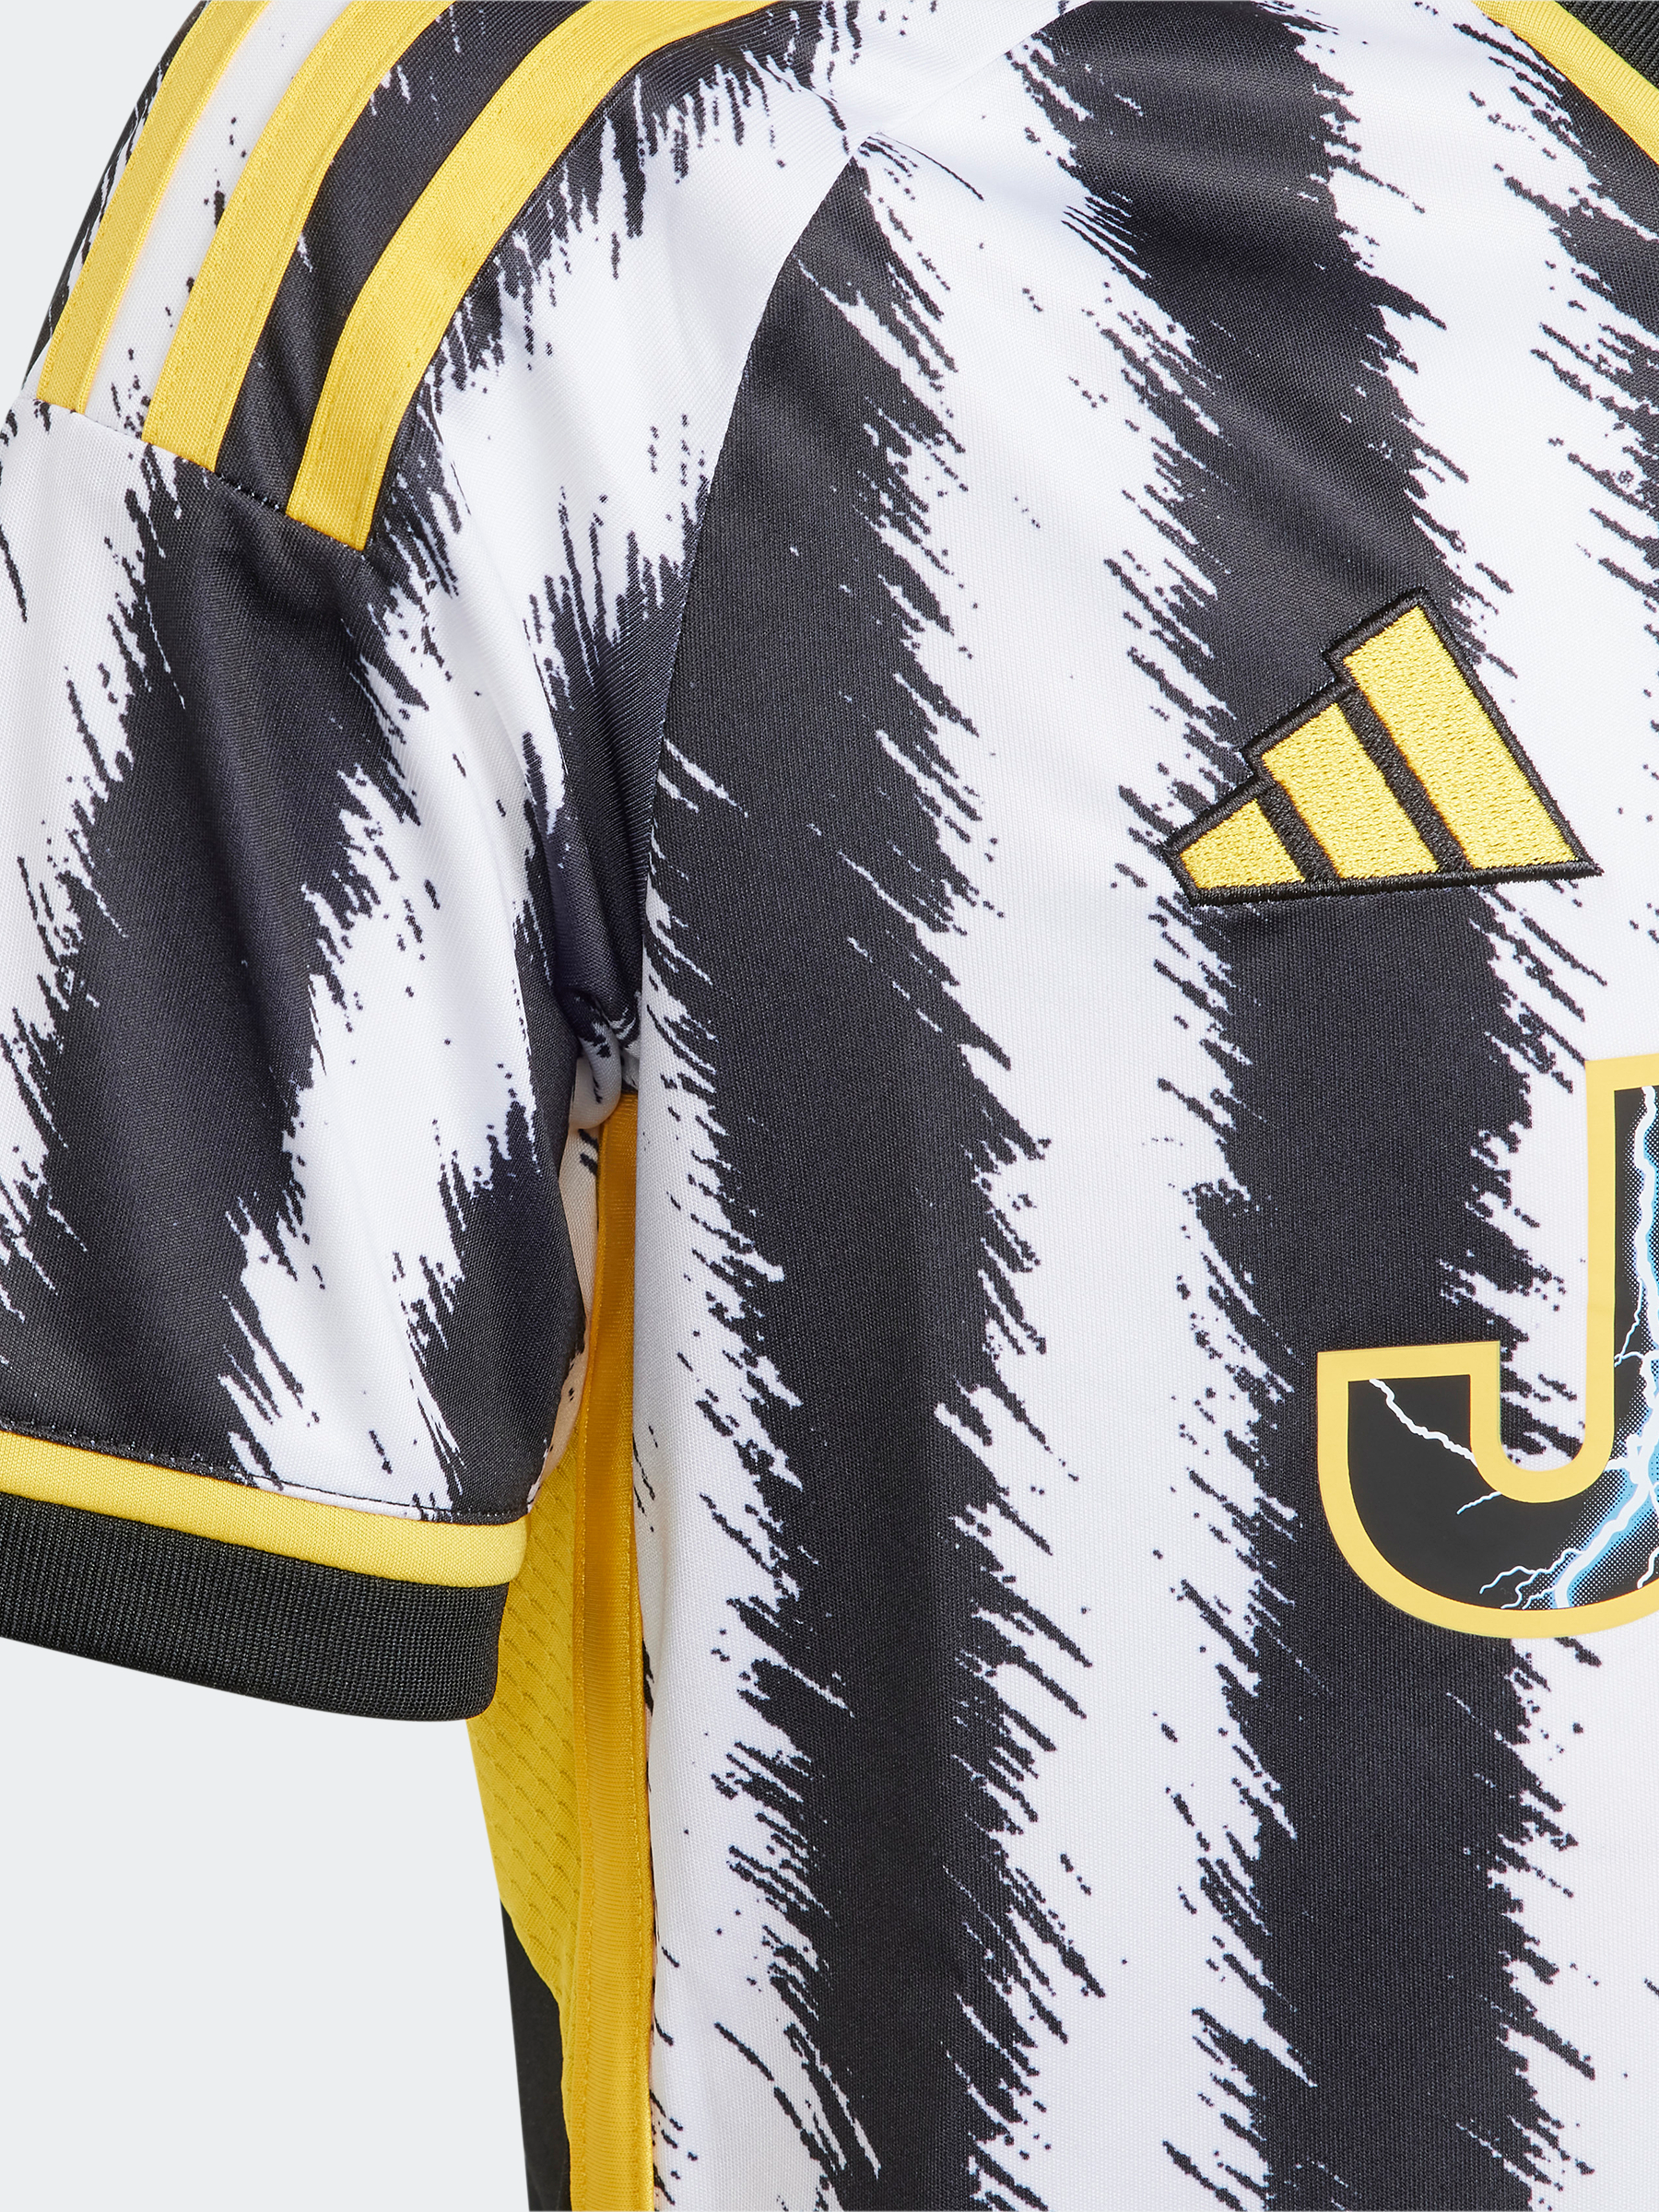 חולצת כדורגל של קבוצת יובנטוס- adidas performance|אדידס פרפורמנס